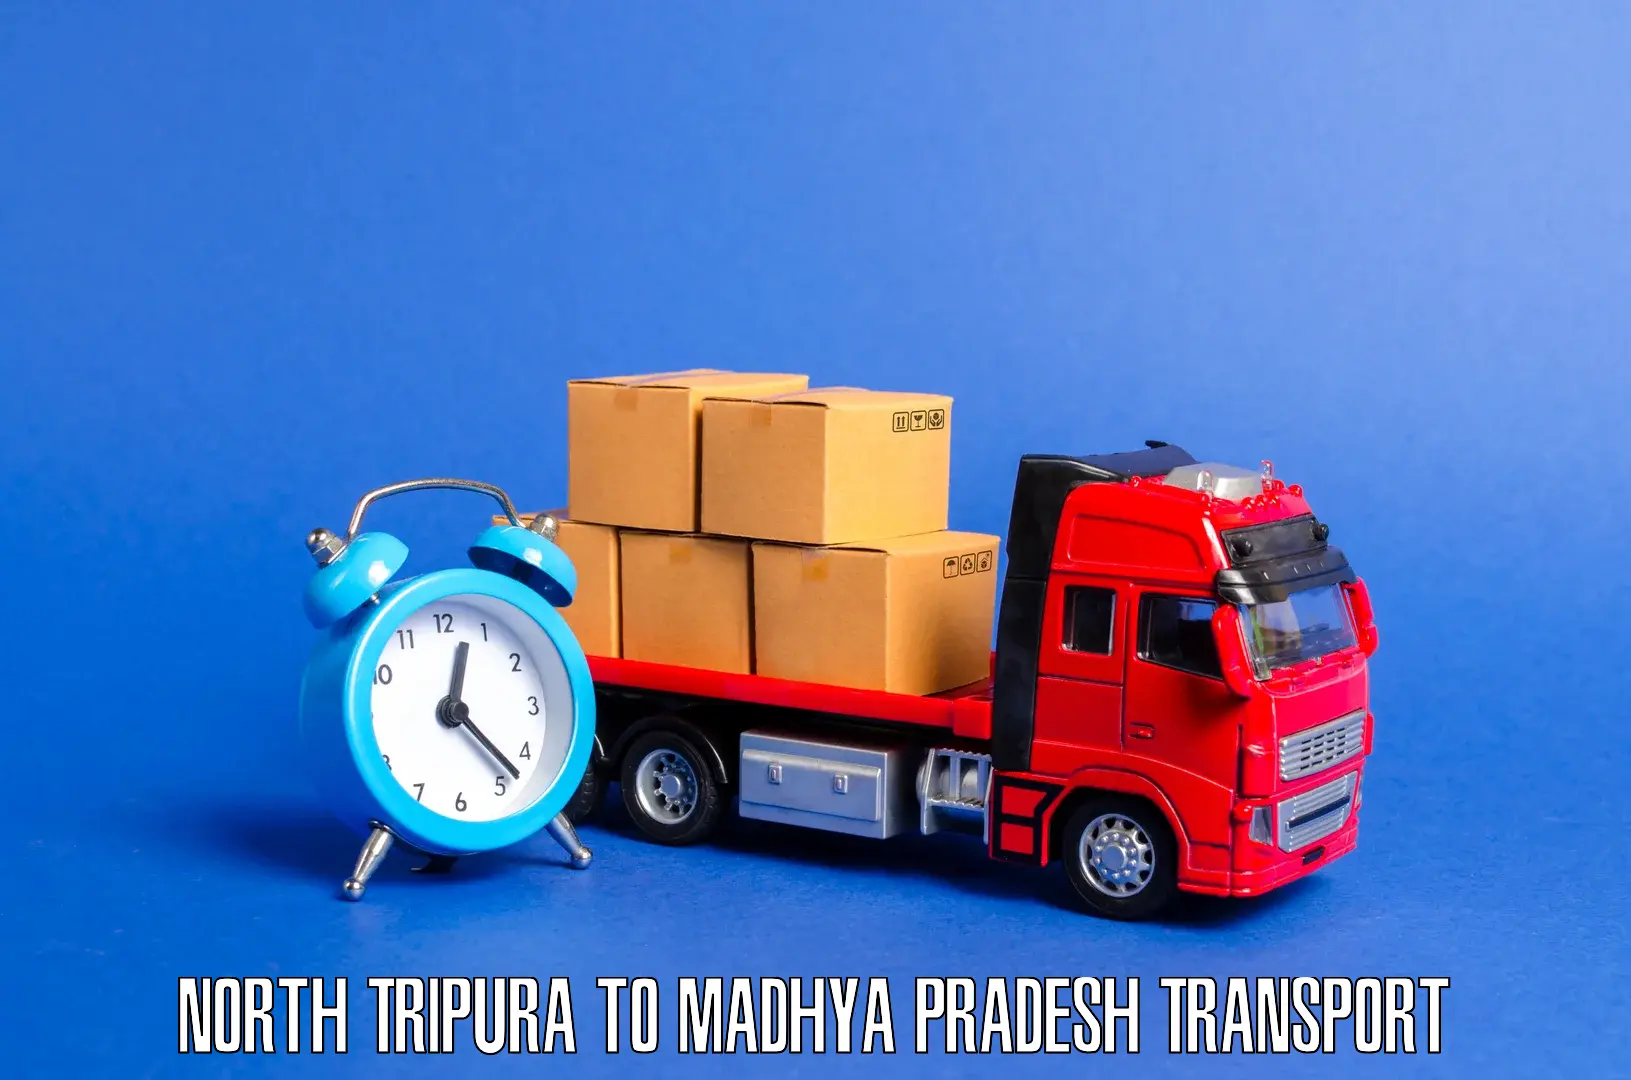 Delivery service North Tripura to Dewas